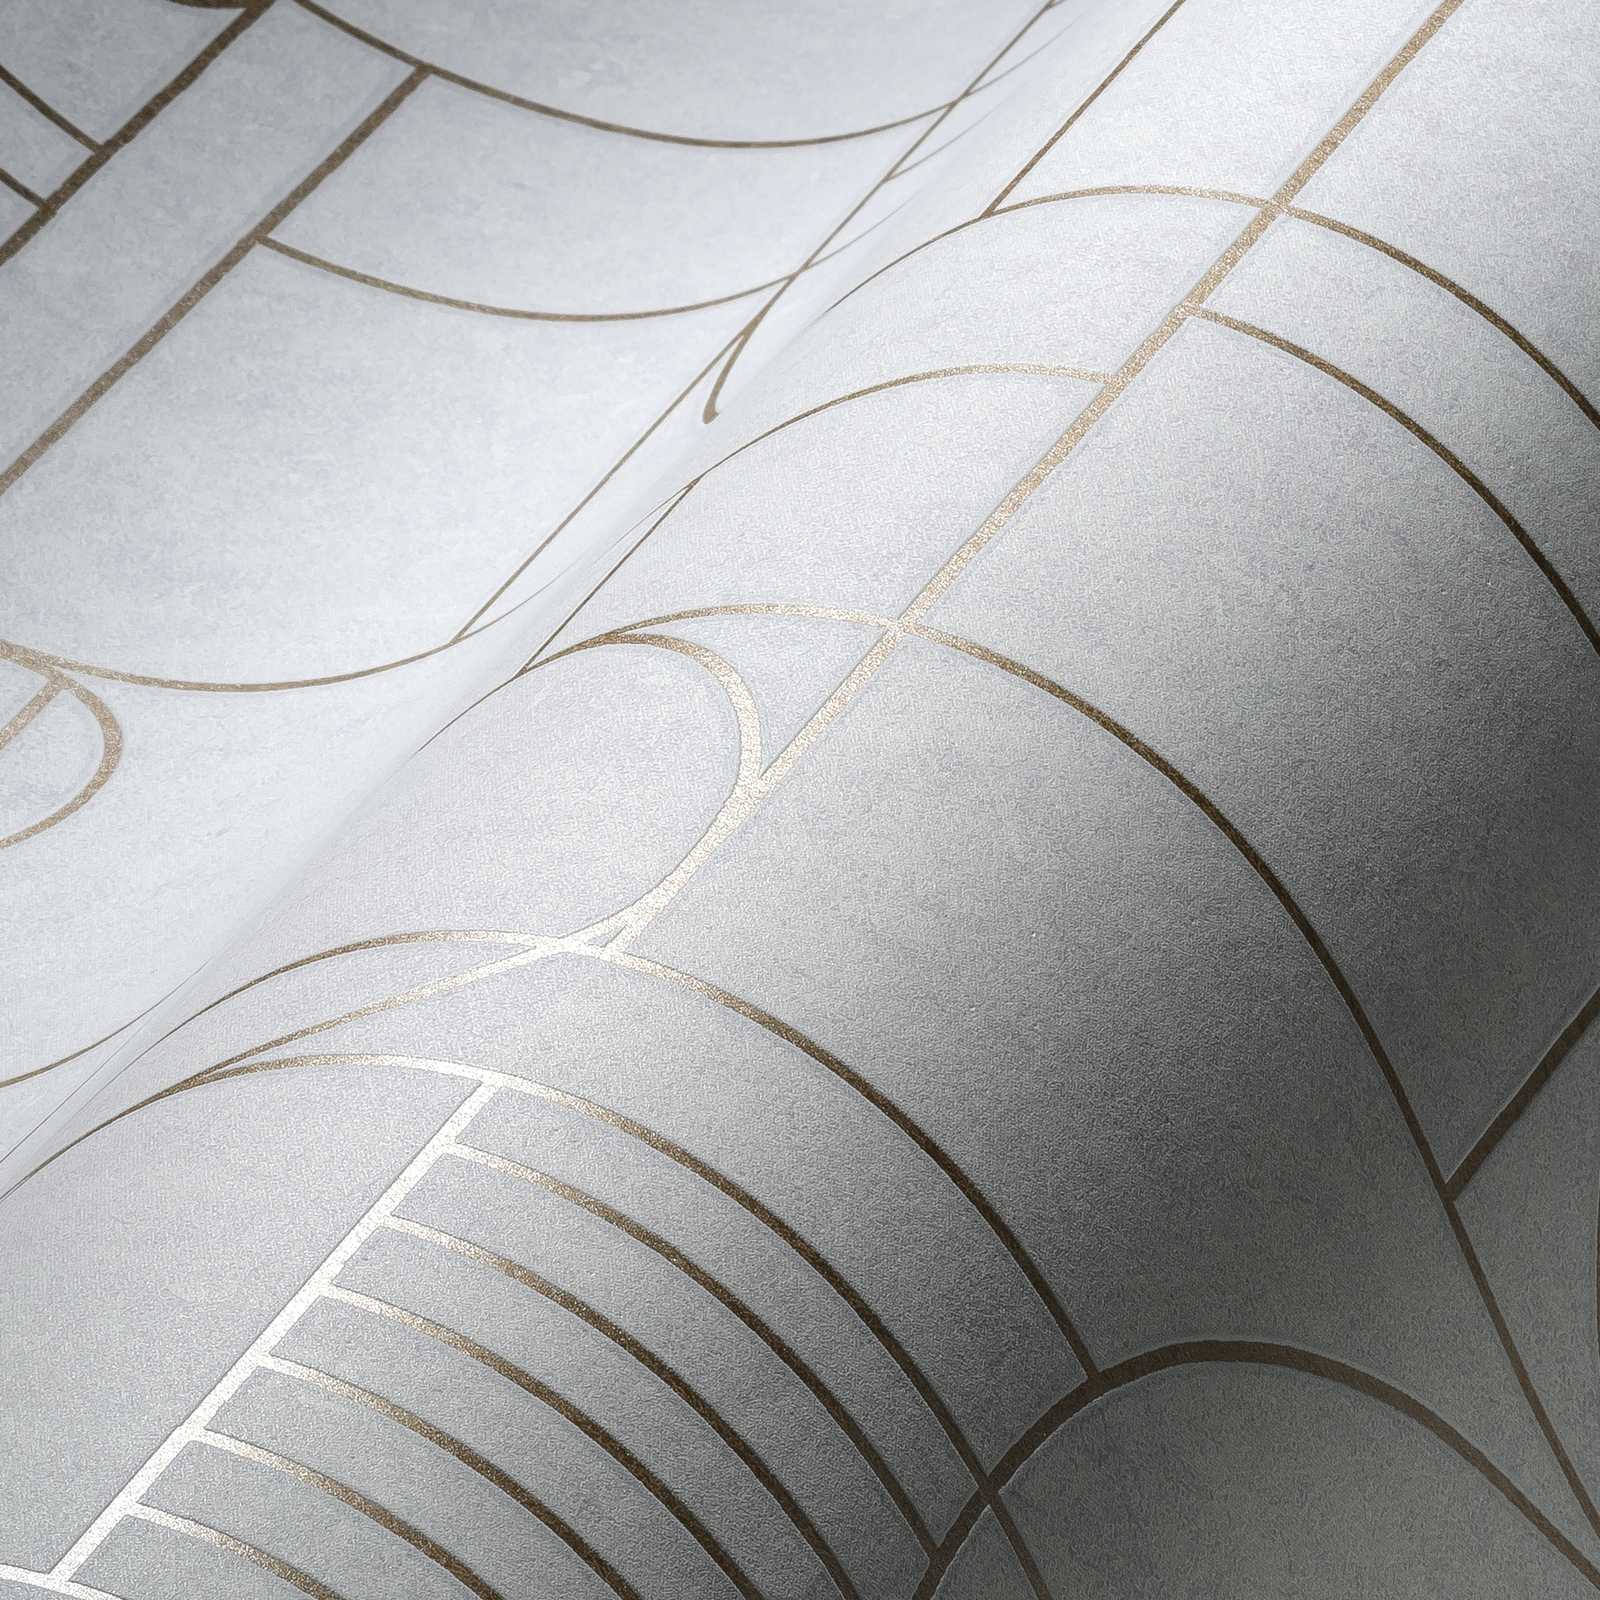             Papier peint effet carrelage Art Deco Design marbré - métallique, blanc
        